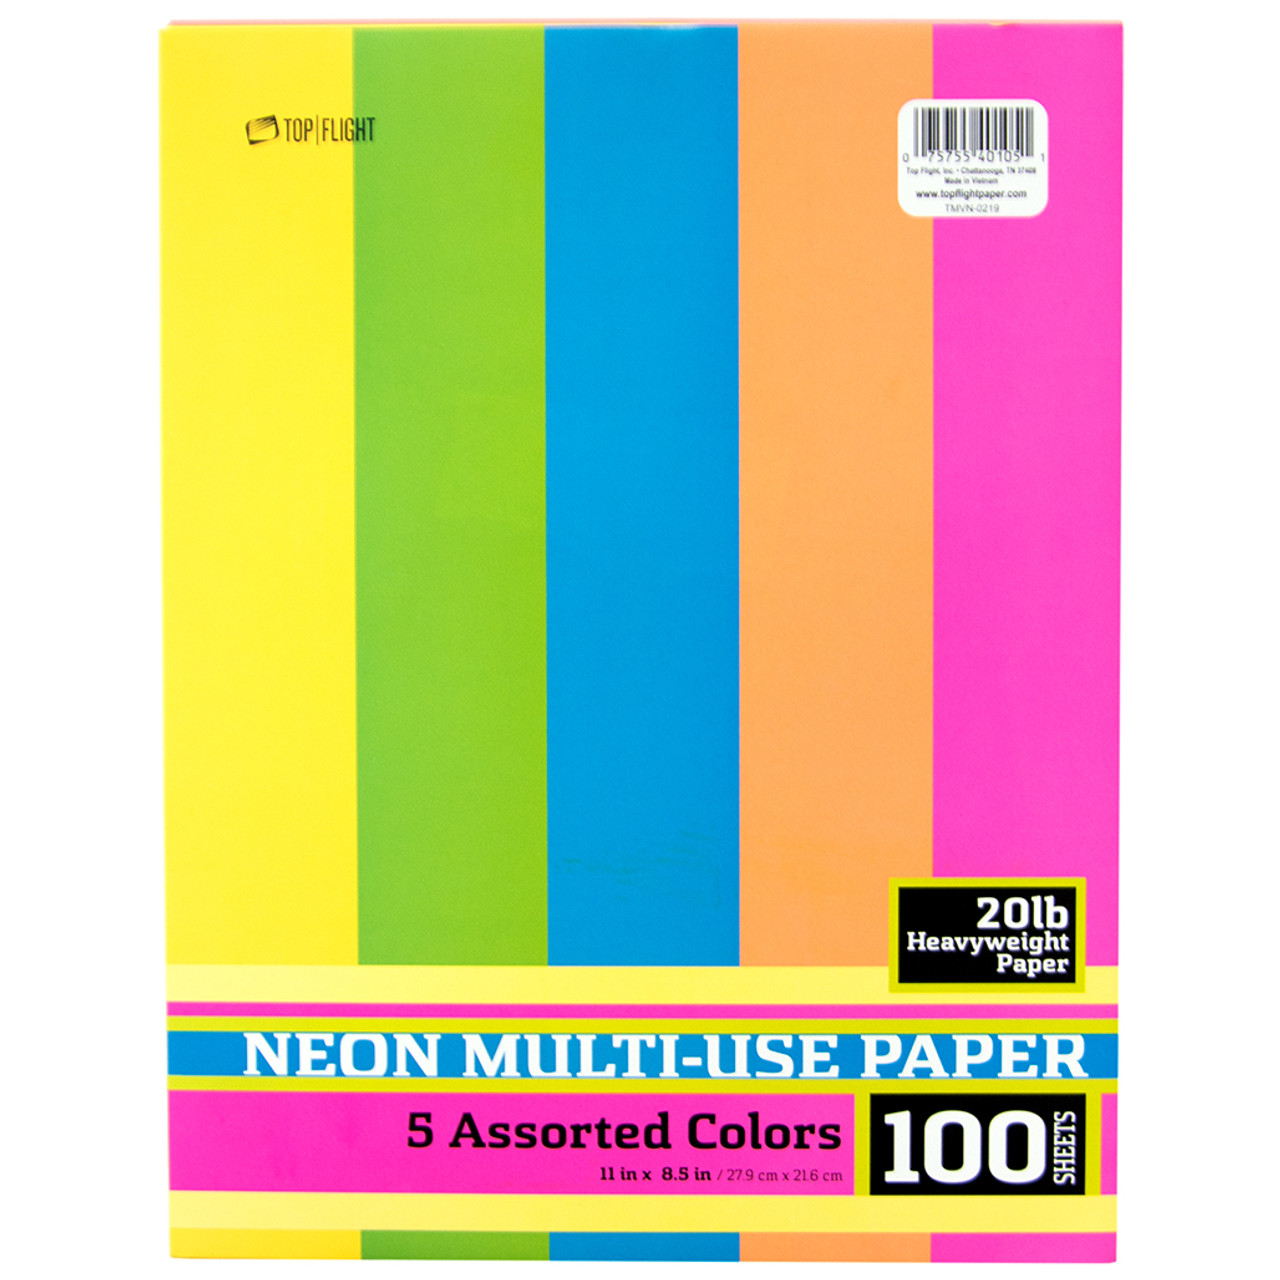 A4 Size Fluorescent Color Paper, Construction Pastel Sheet